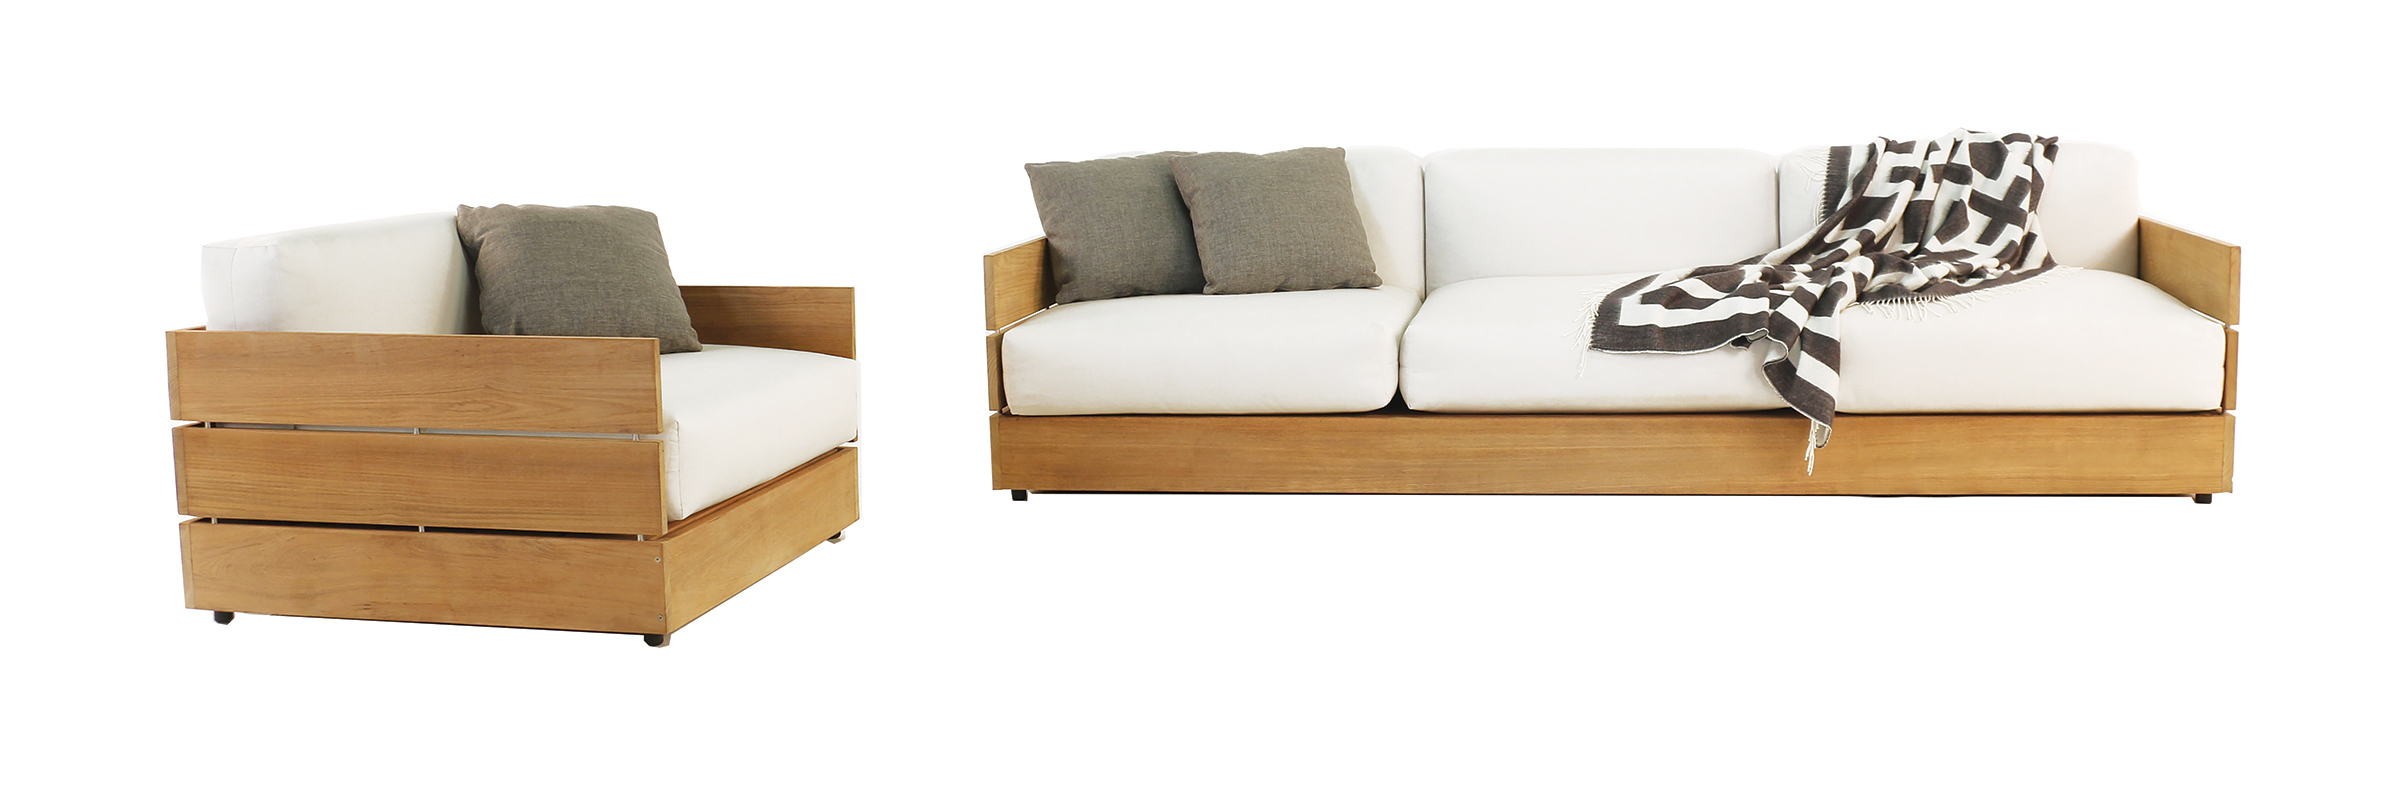 Napa Furniture Design The Grand Louie BRMCHE9905C Traditional